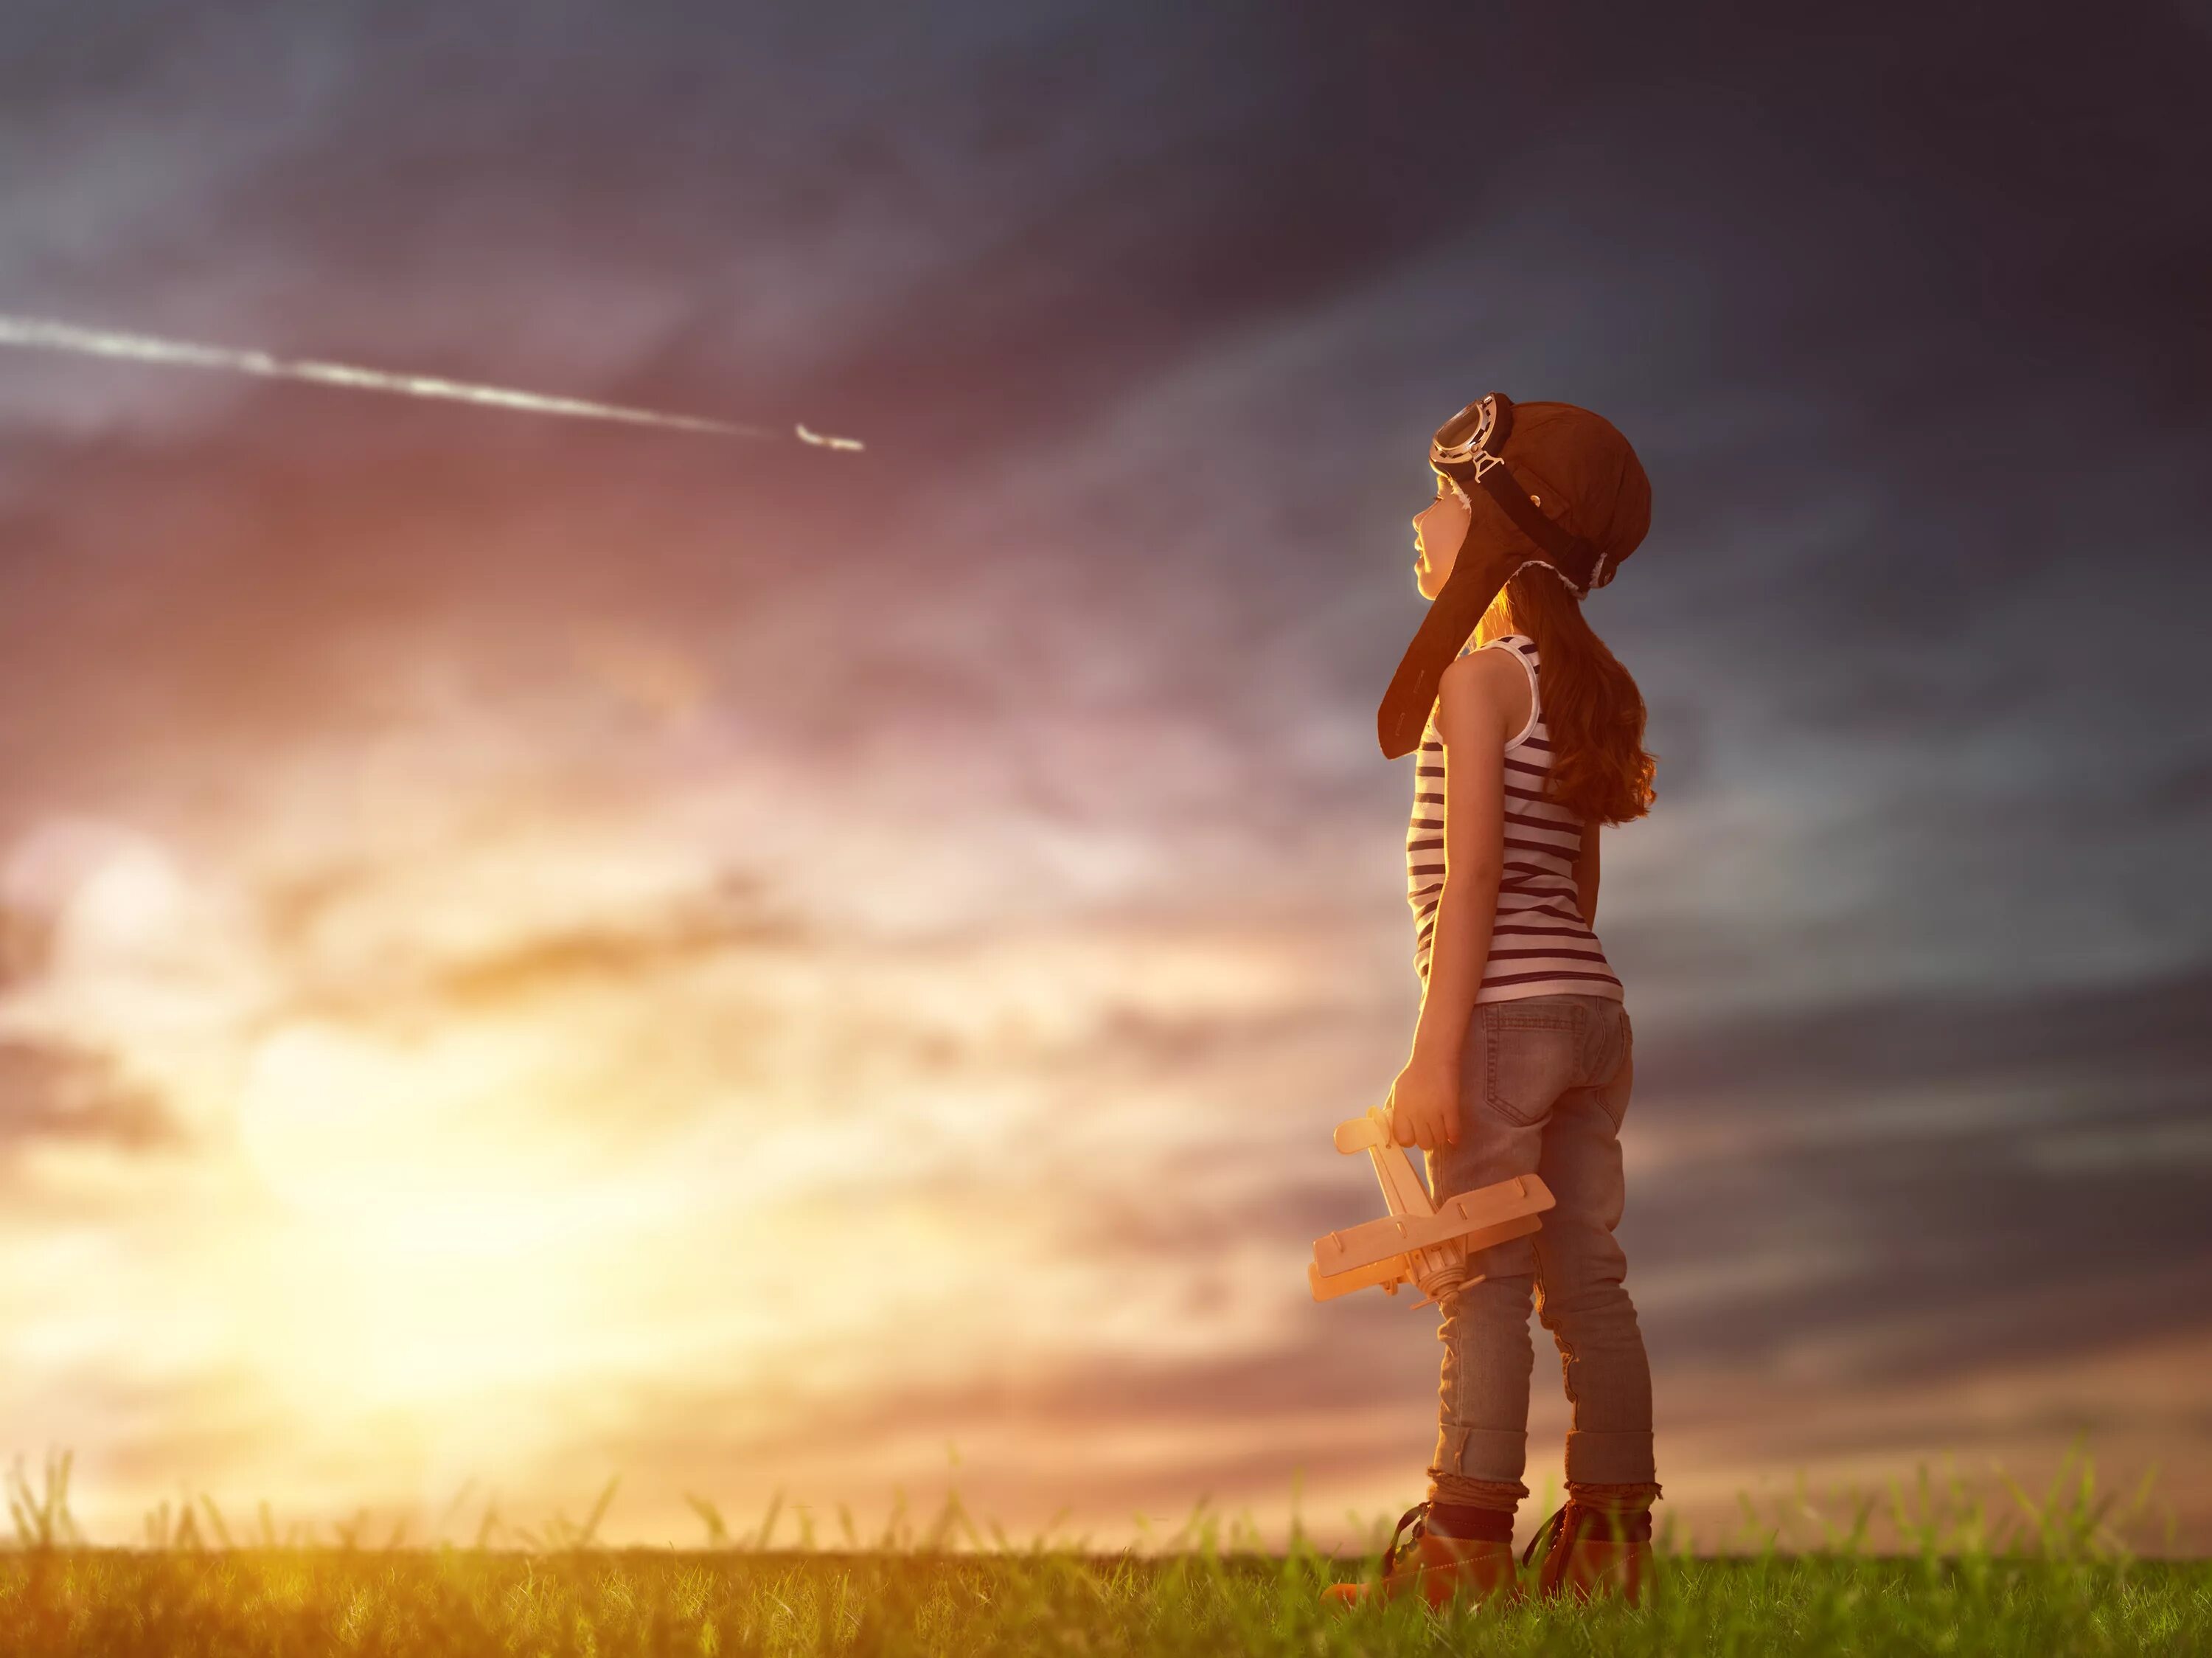 Фильтр сепия. Ребенок смотрит в небо. Сепия в фотошопе. Жизнь и мечты 5